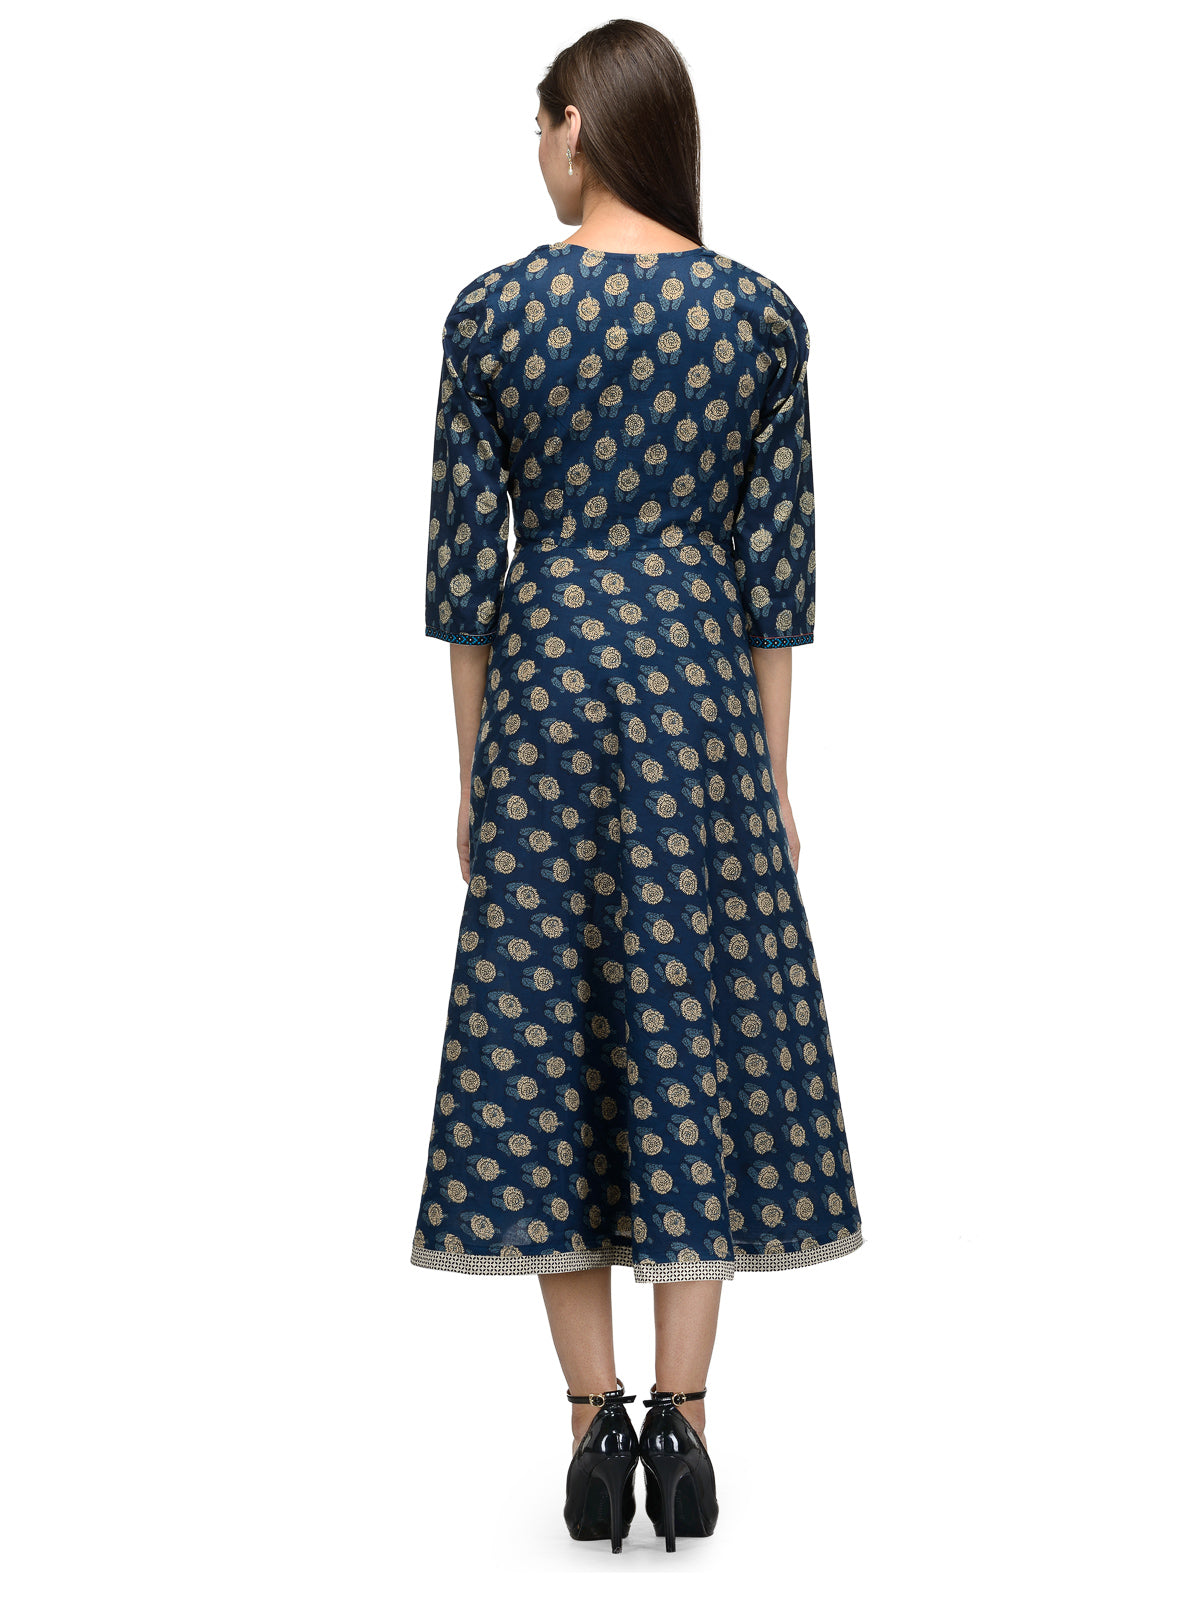 Calf length Indigo blue cotton printed dress UD6004